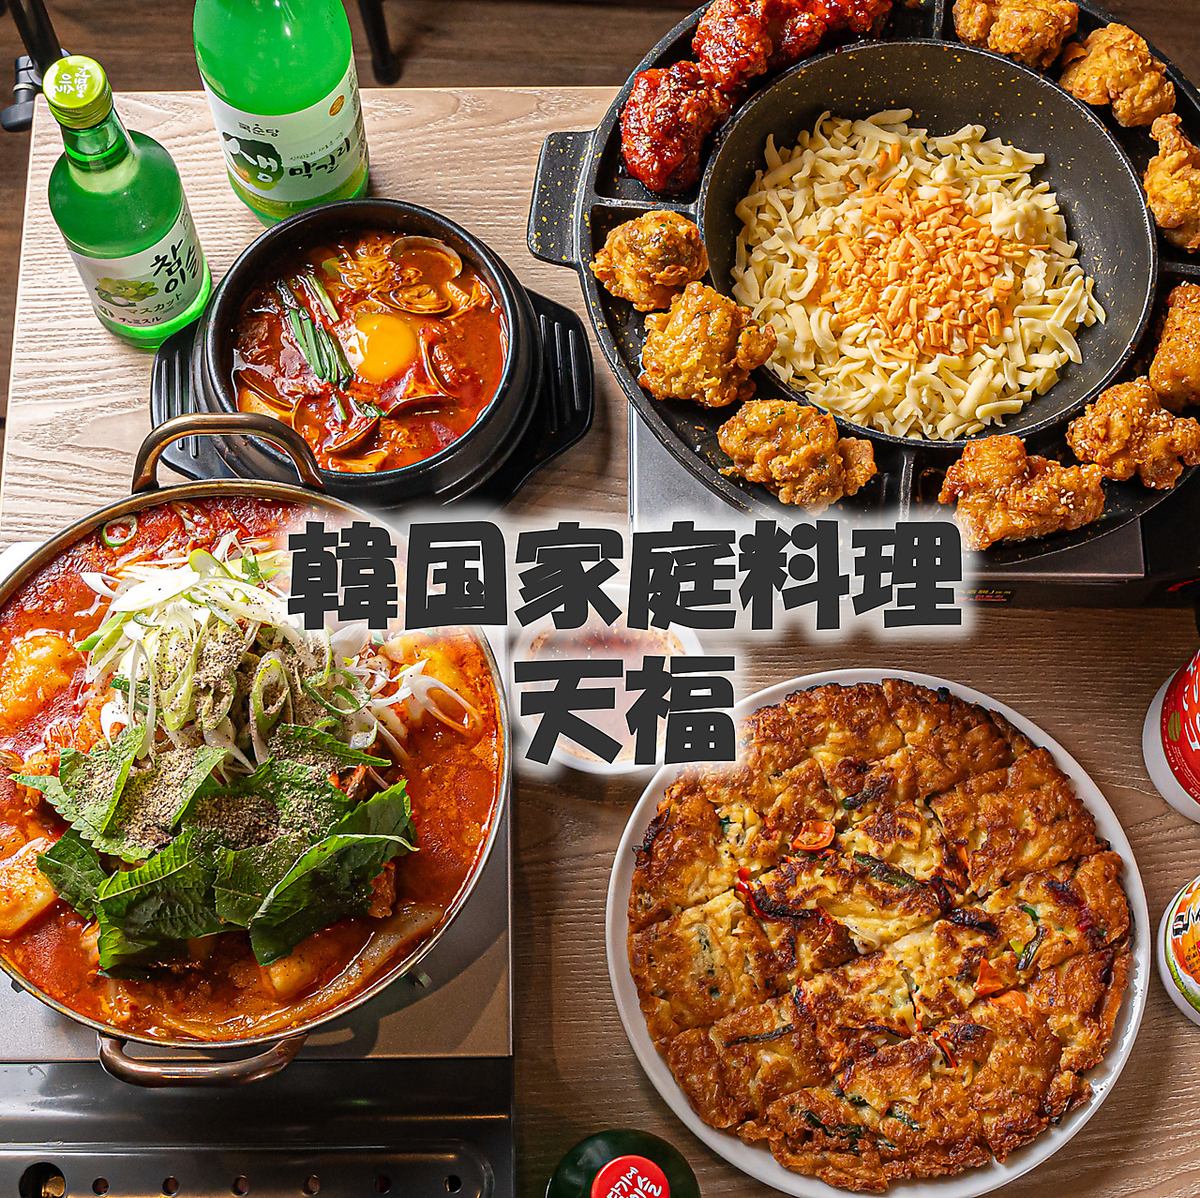 请用美味的韩国美食和美酒度过幸福的时光。